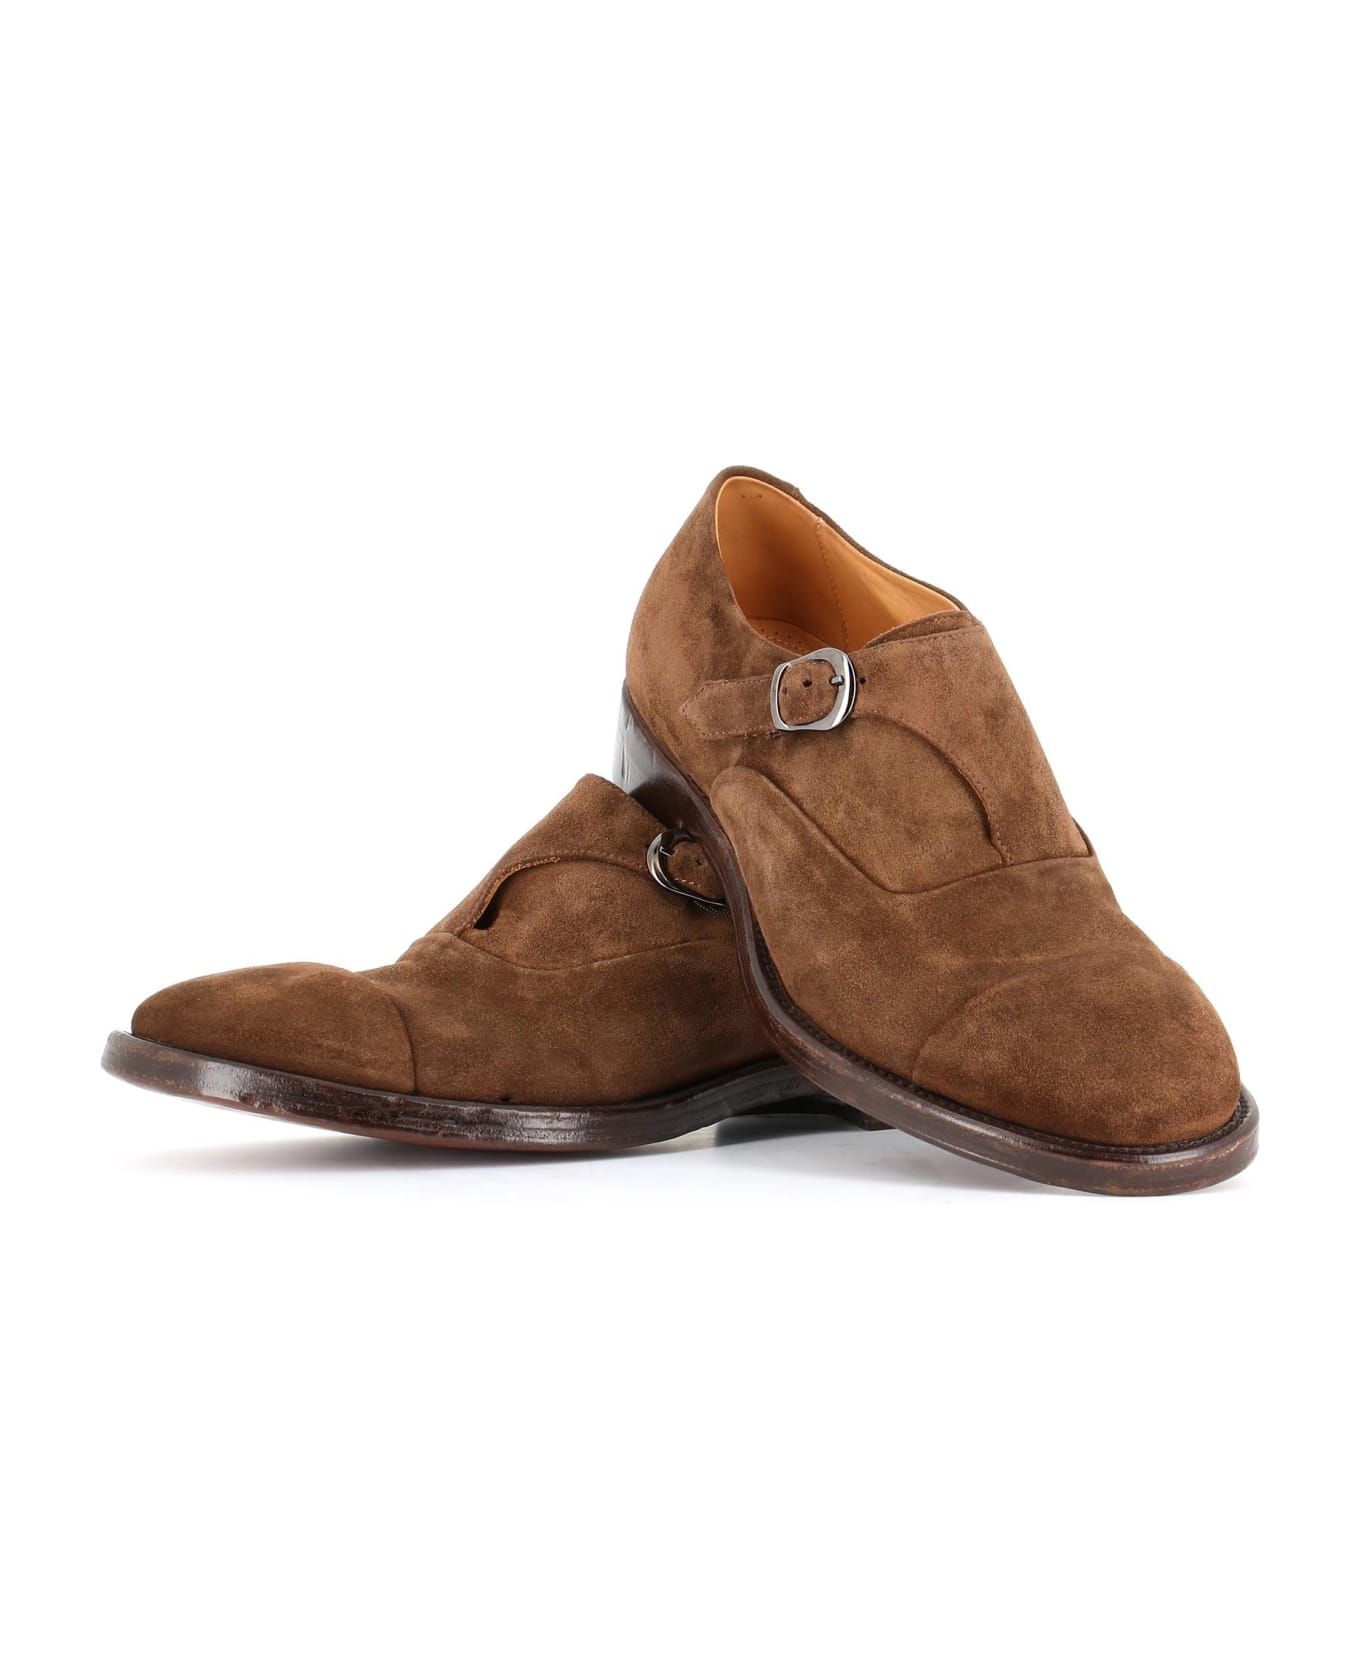 Alberto Fasciani Monk Shoes "xavier 55011" - Beige